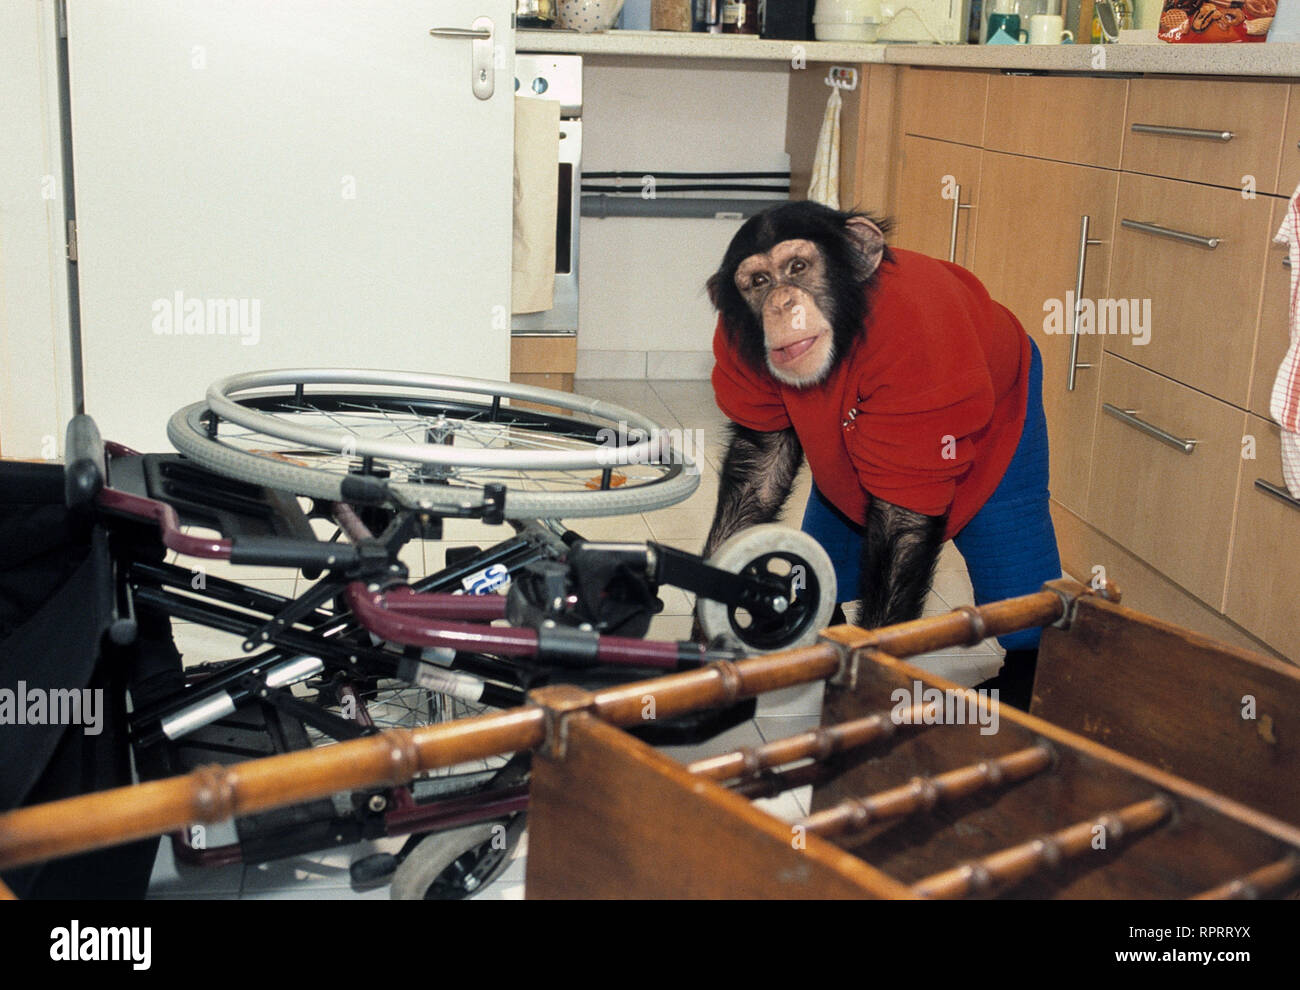 UNSER CHARLY / Partner fürs Leben D 2001 / Franz Josef Gottlieb Bild: Schimpanse Charly # / Überschrift: UNSER CHARLY / D 2001 Stock Photo